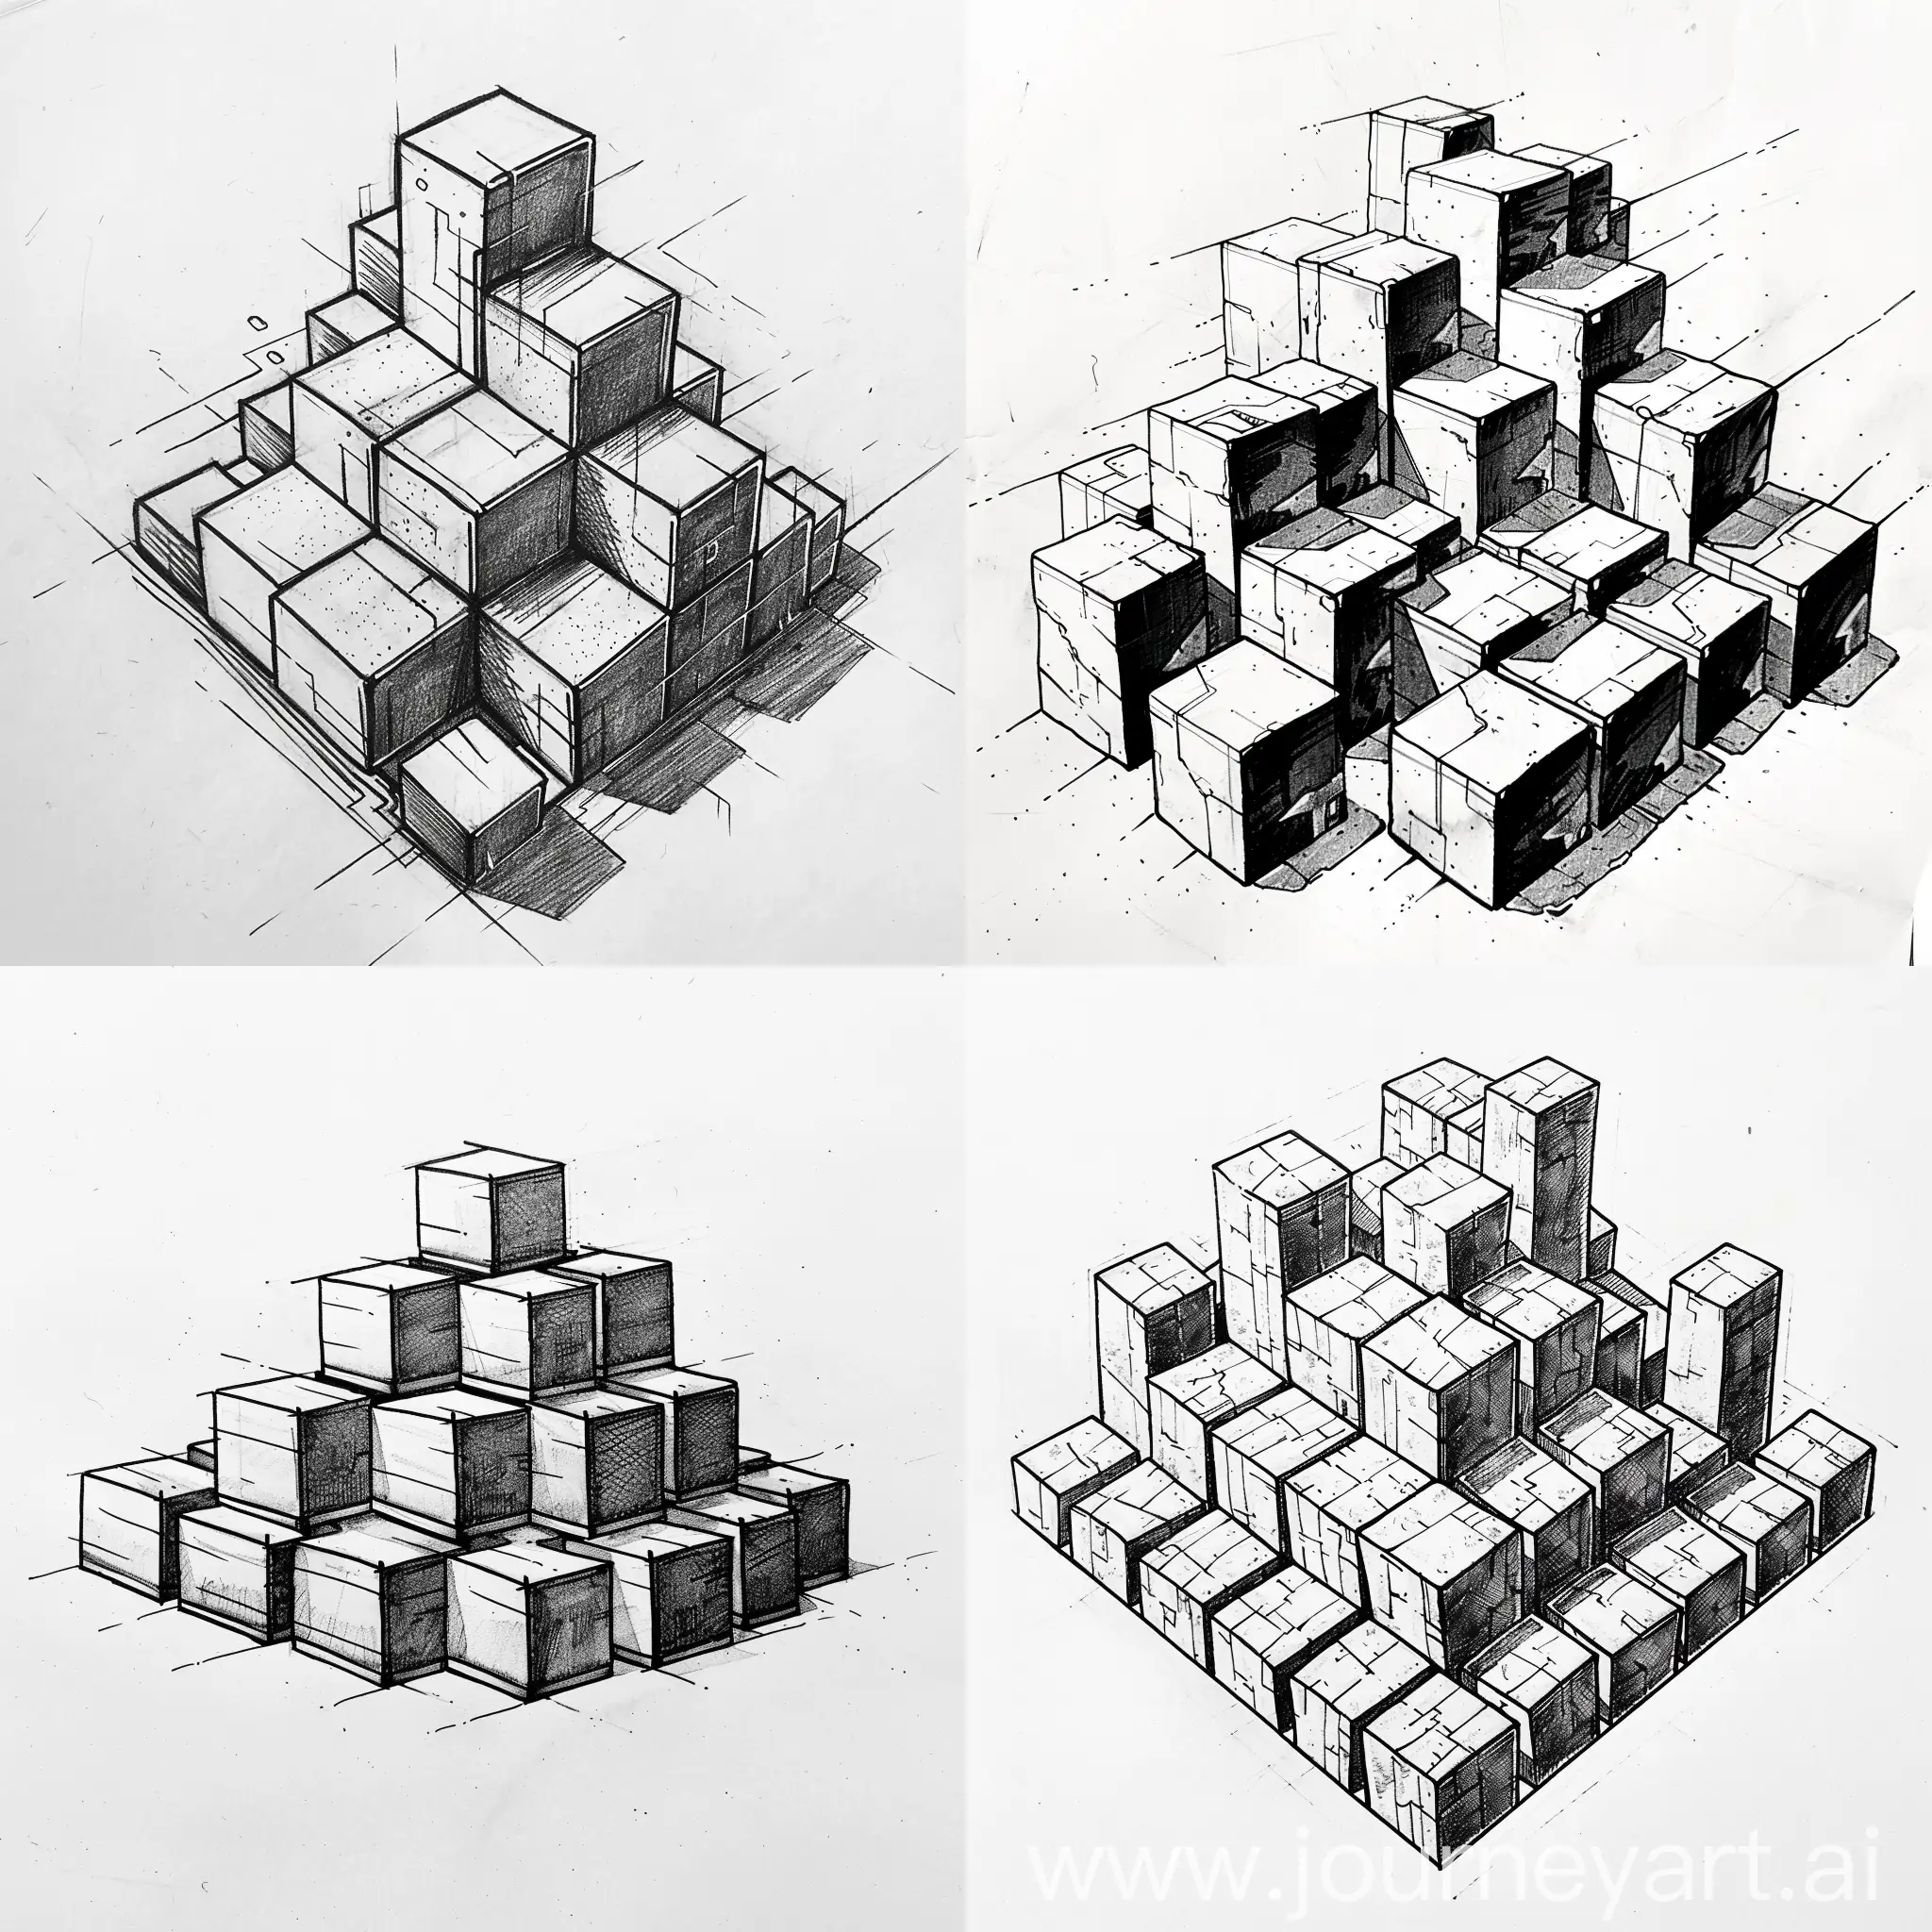 Quiero que me generes un boceto a blanco y negro, donde el concepto sean cubos escalonados en tipo piramide donde los enlaces y enmarques cada uno de ellos